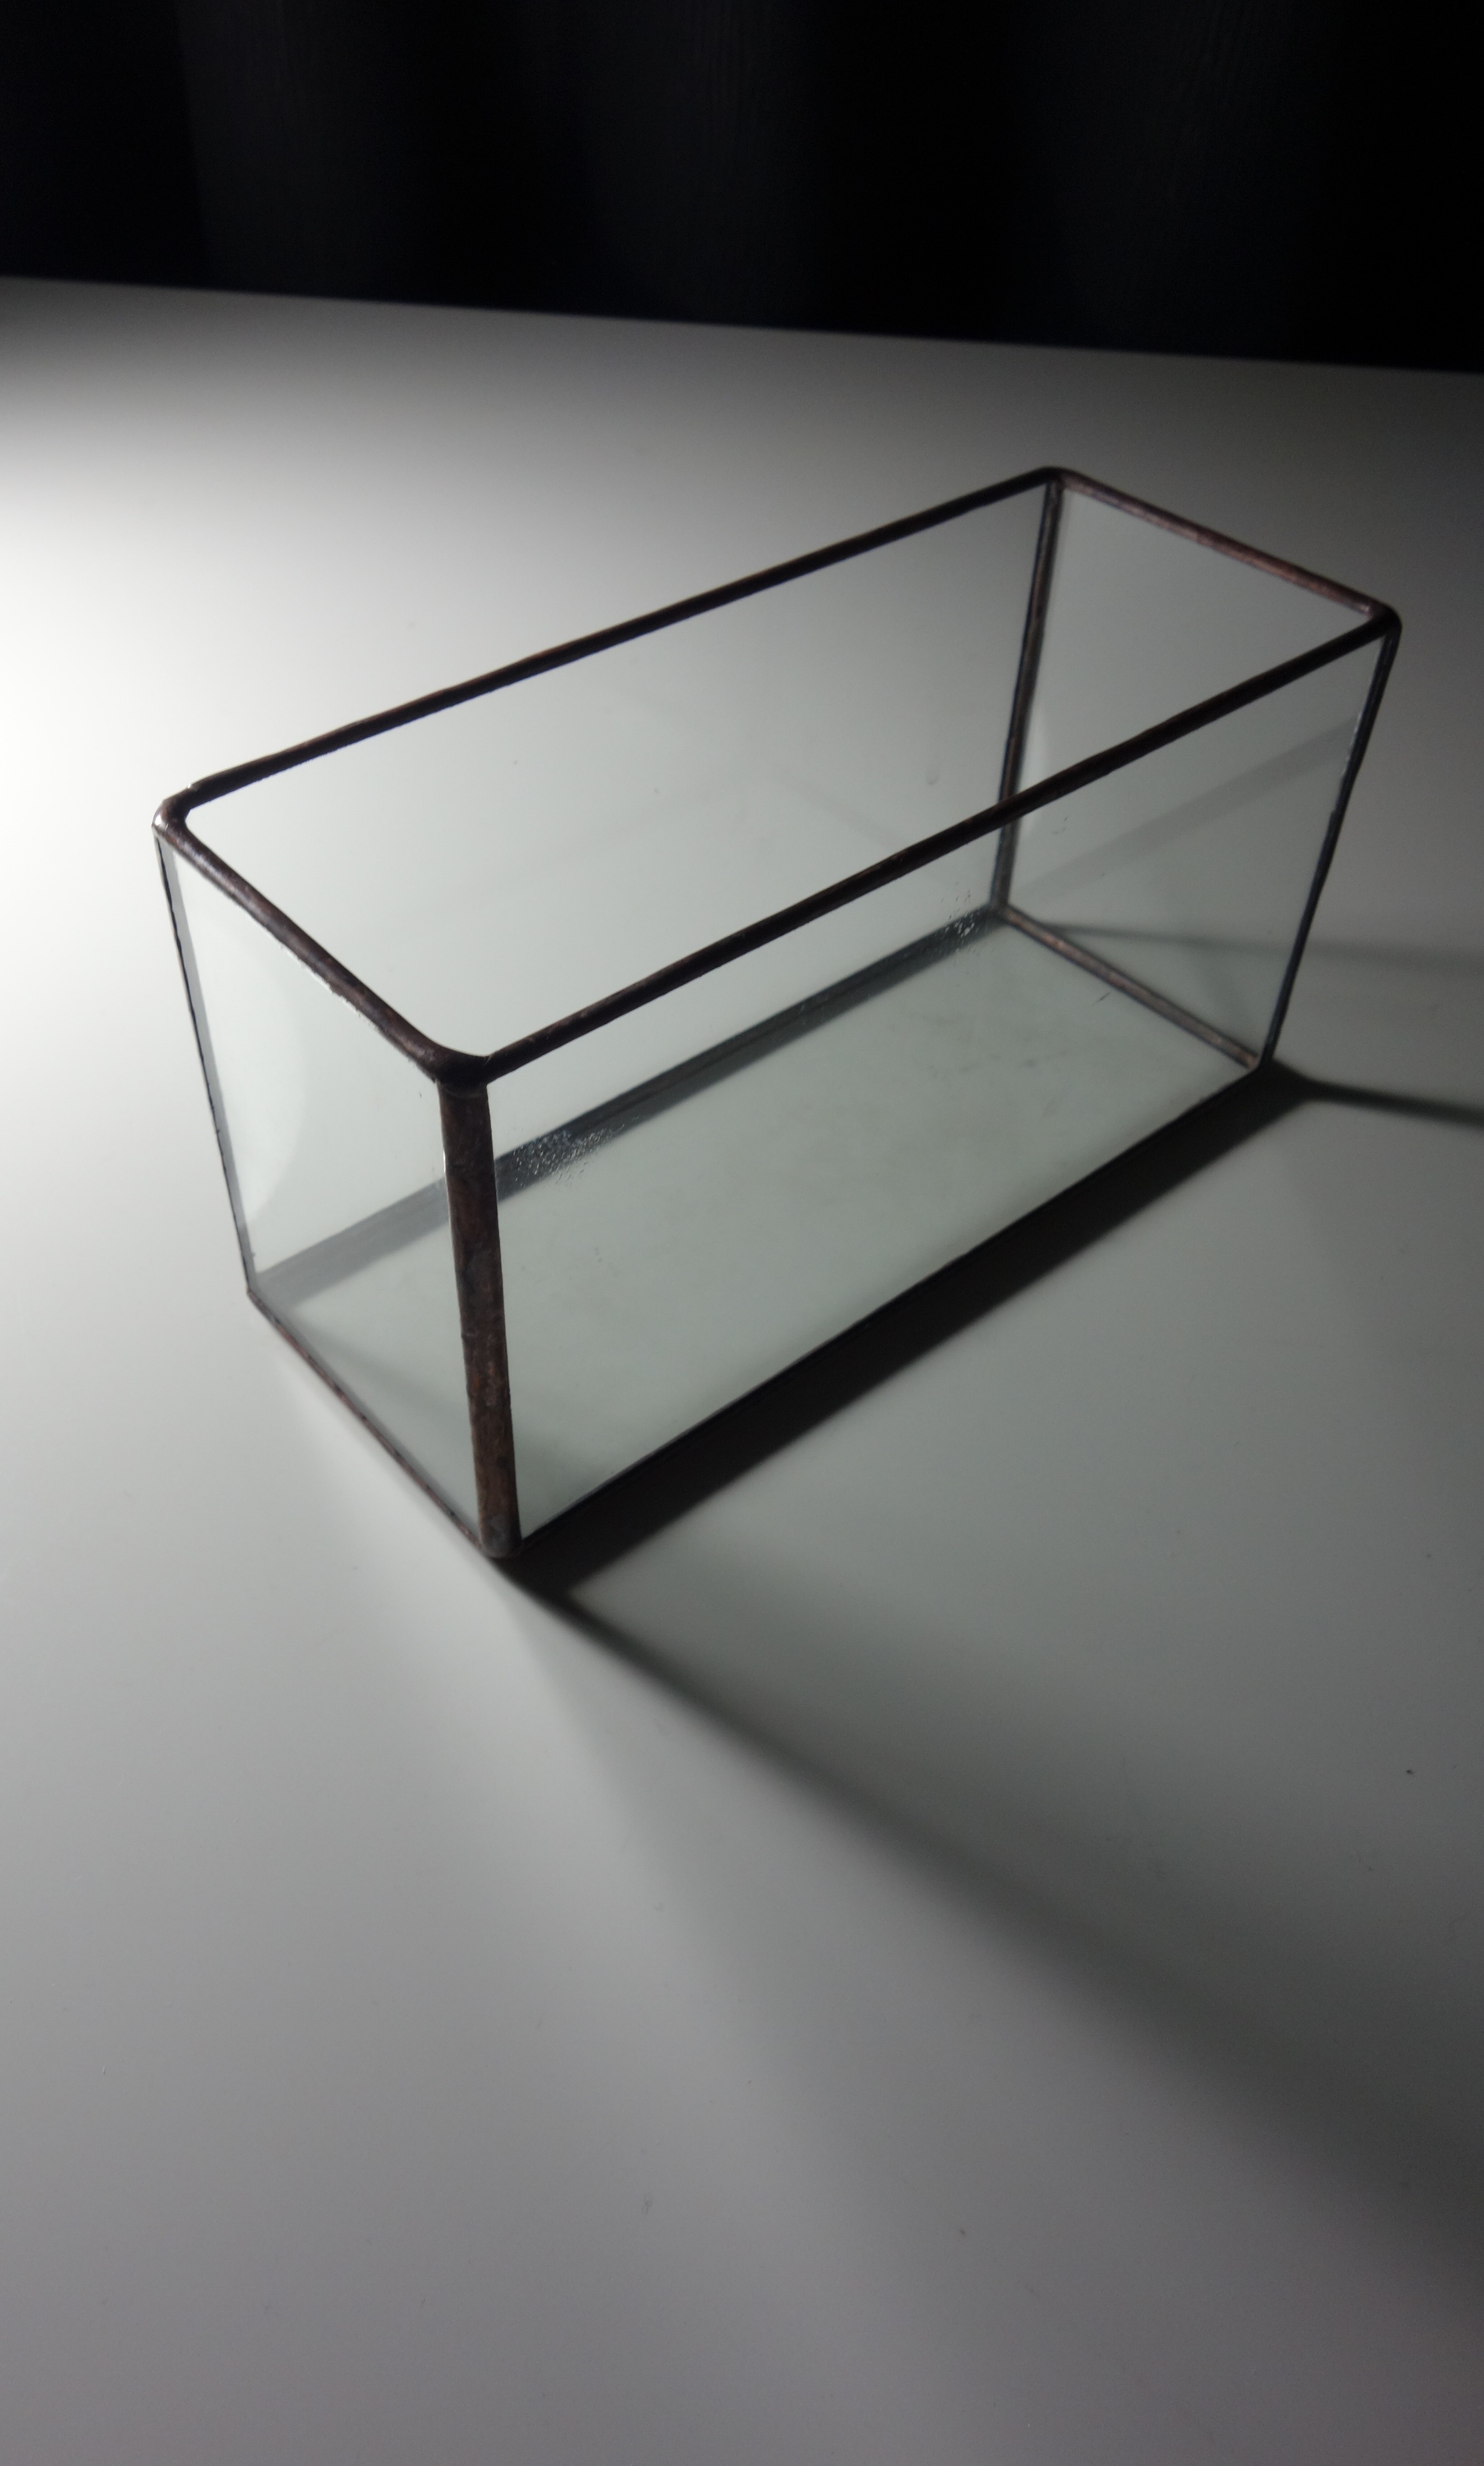 ステンドグラス シンプル ガラス収納ケース メイクボックス はがきスタンド カードホルダー フォトスタンド Iichi ハンドメイド クラフト作品 手仕事品の通販